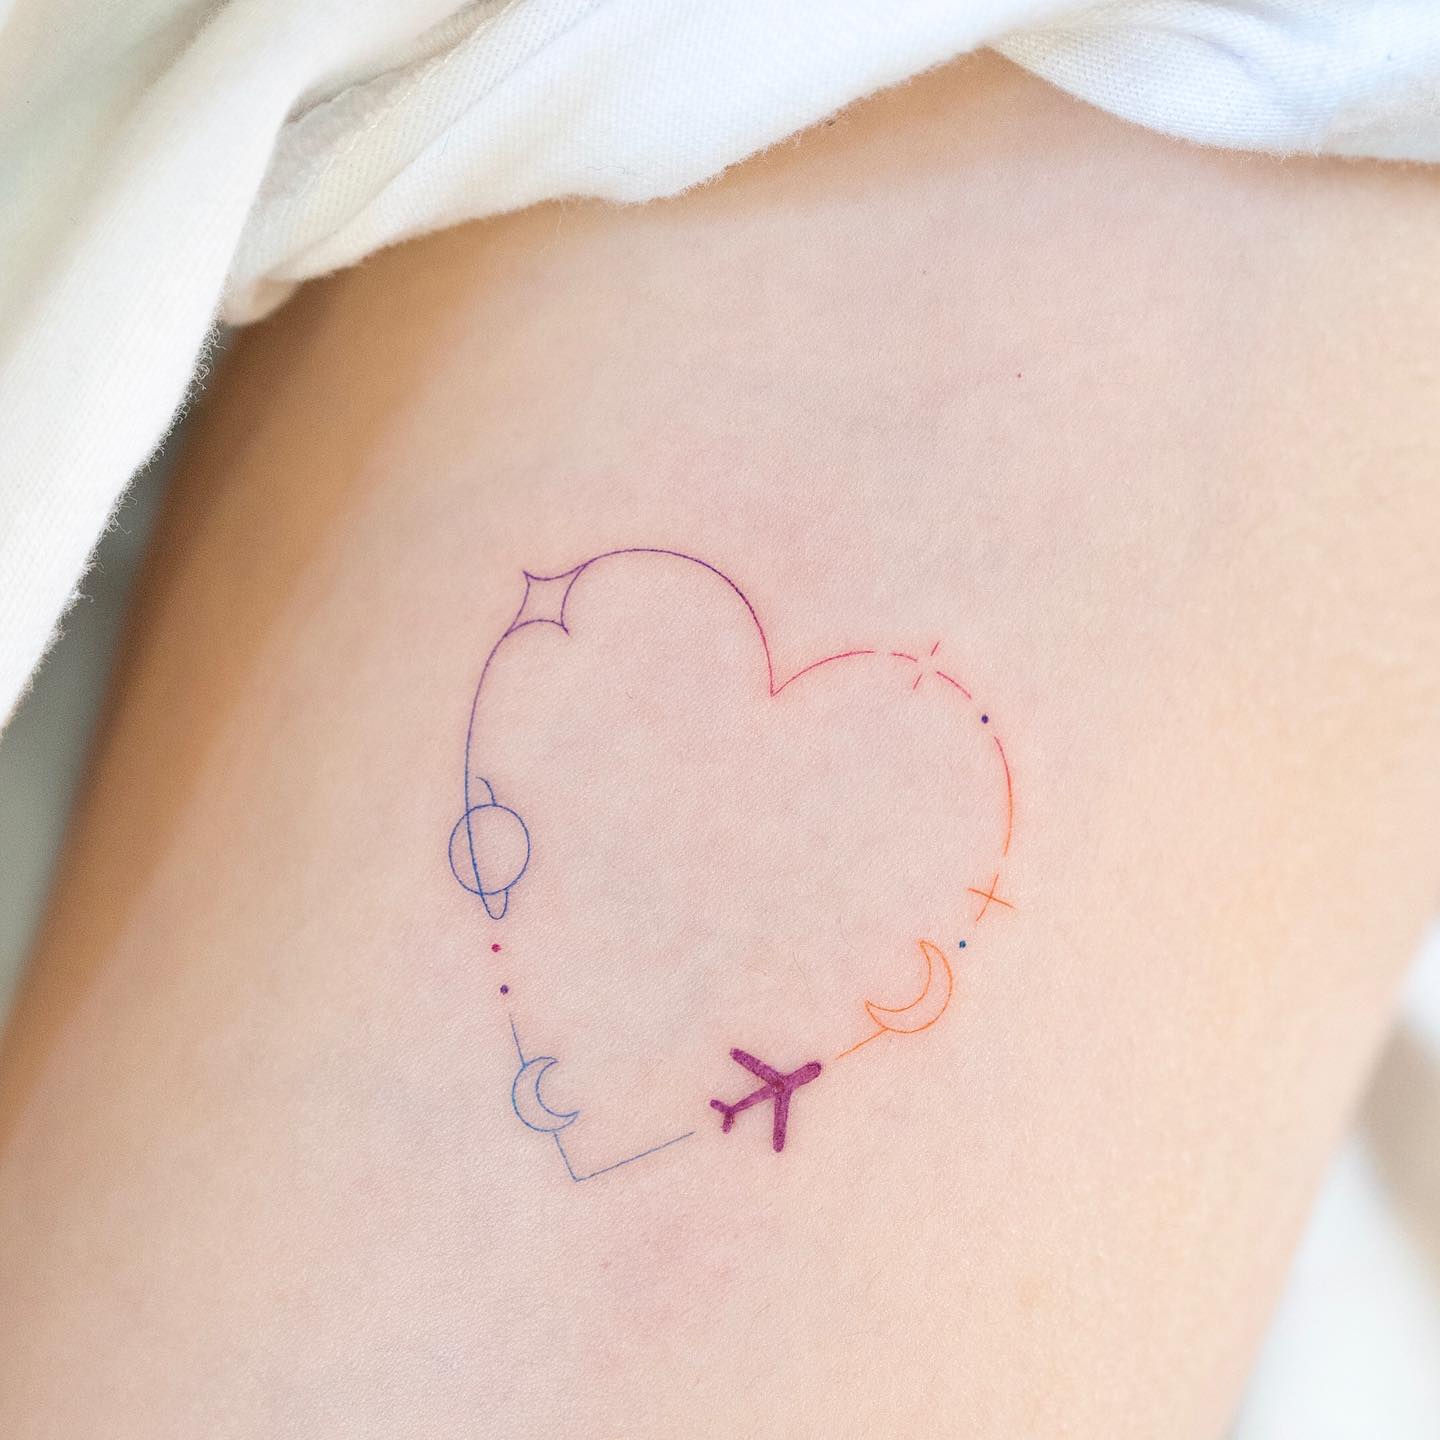 Tatuaje del corazón de los aviones